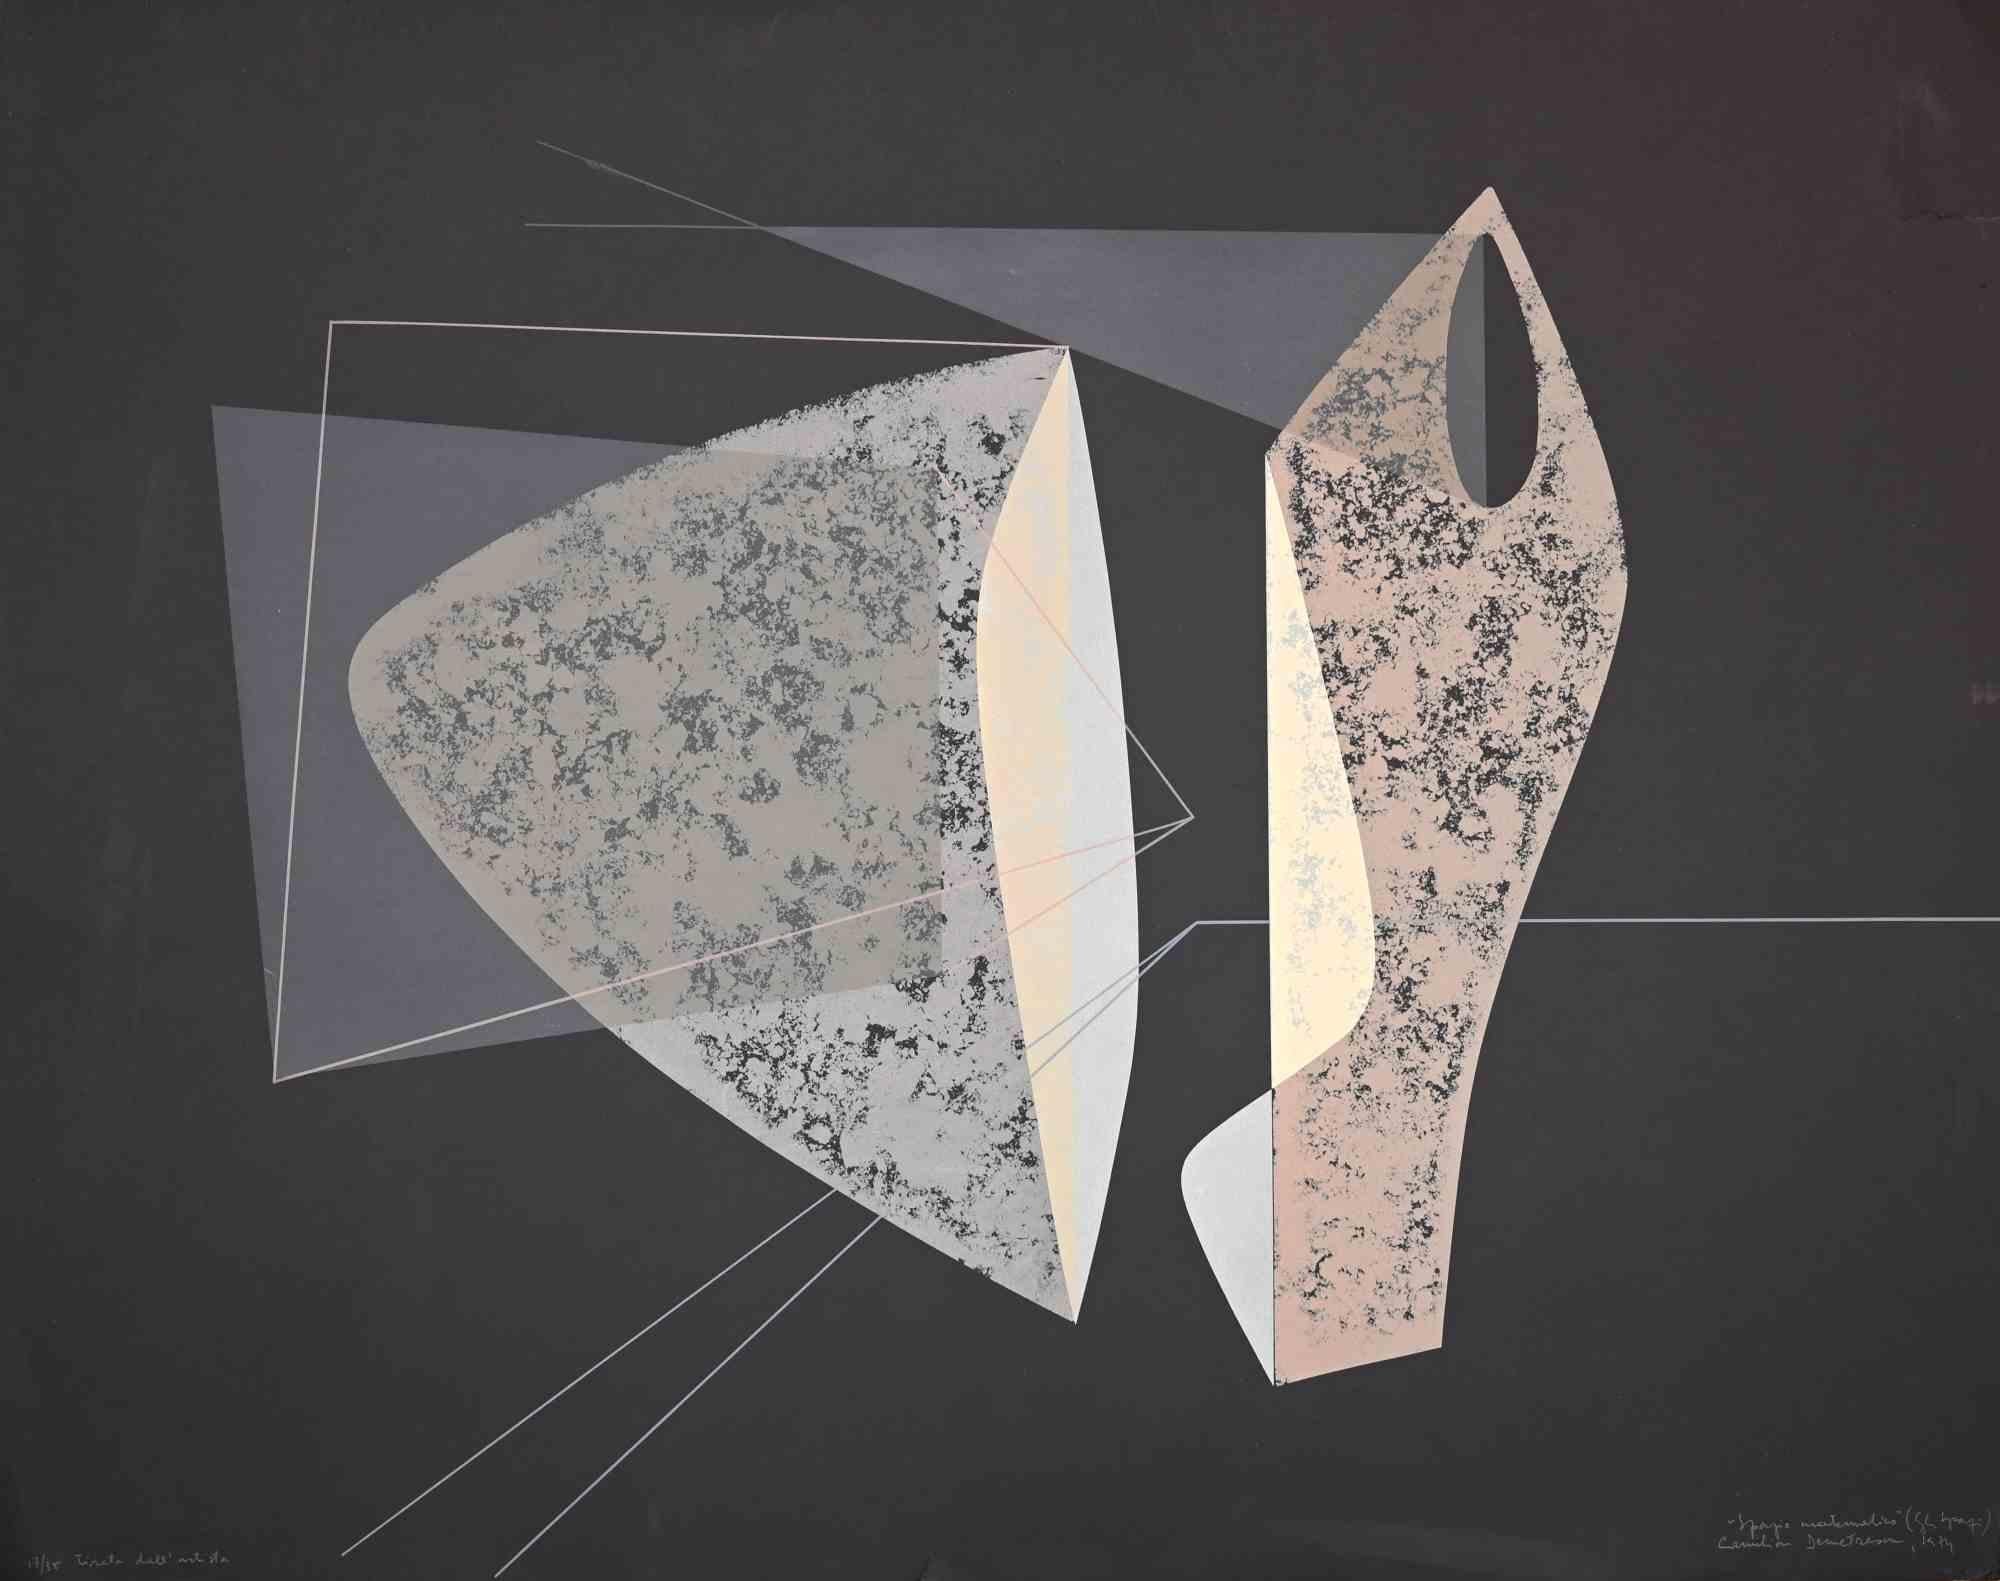 Mathematischer Raum ist ein Originalkunstwerk von Camilian Demetrescu aus dem Jahr 1974.

Serigrafie aus der Mappe "Gli Spazi" aus dem Jahr 1974. Originaltitel: "Spazio Matematico".

Unten rechts vom Künstler handsigniert, betitelt und datiert 